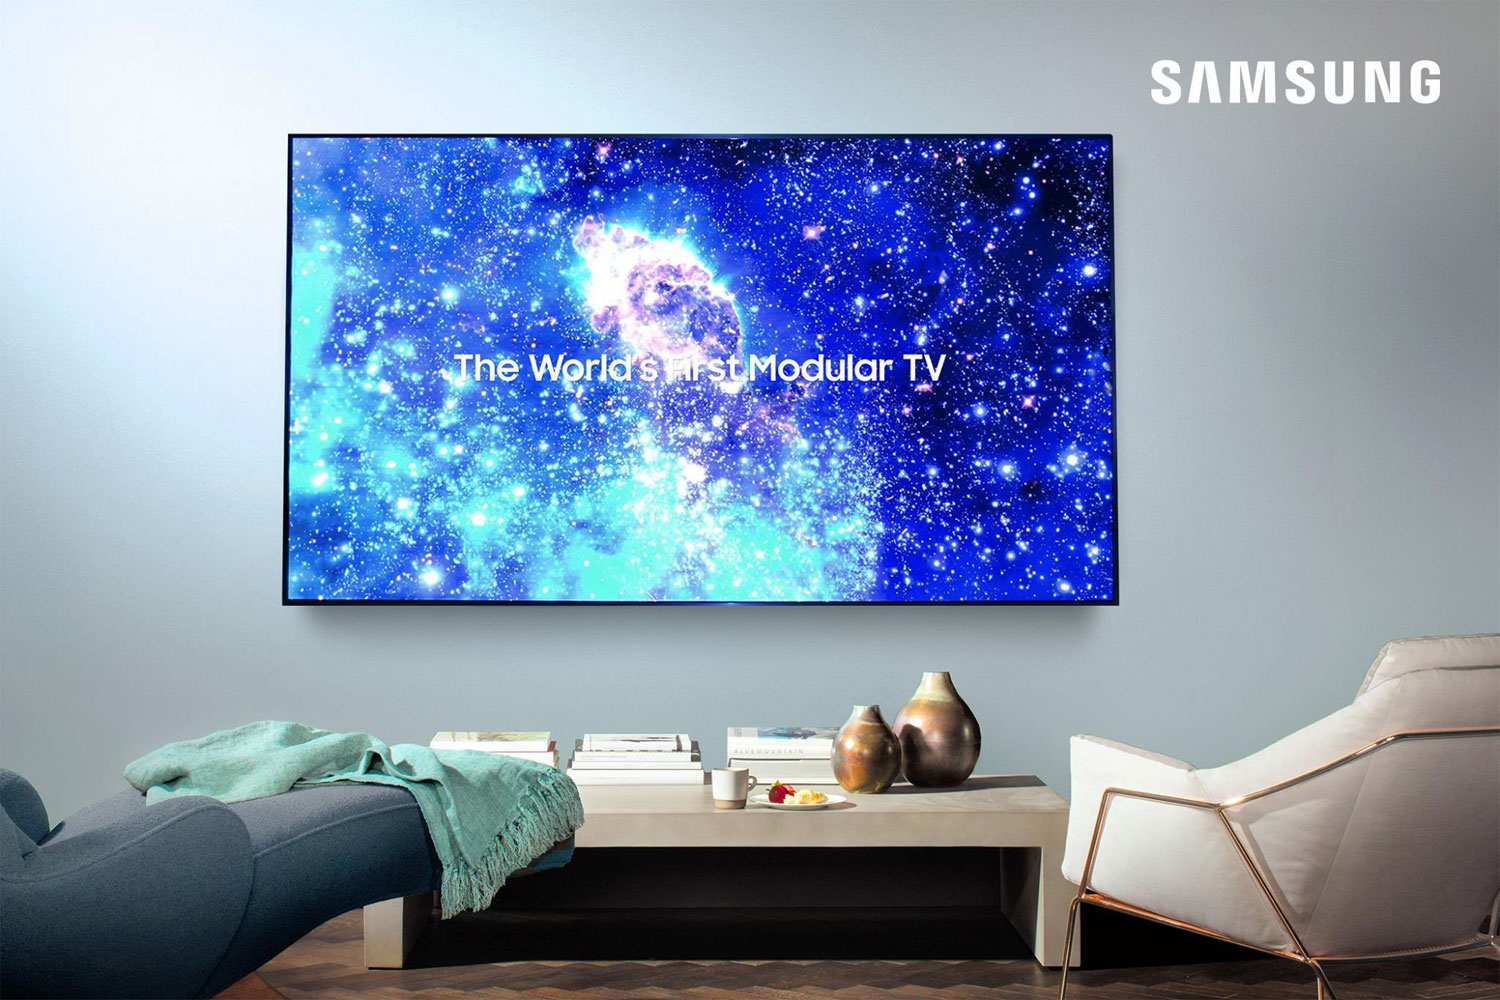 Vær stille Karakter vækst Samsung to launch 75" microLED TV next year - rumor - FlatpanelsHD